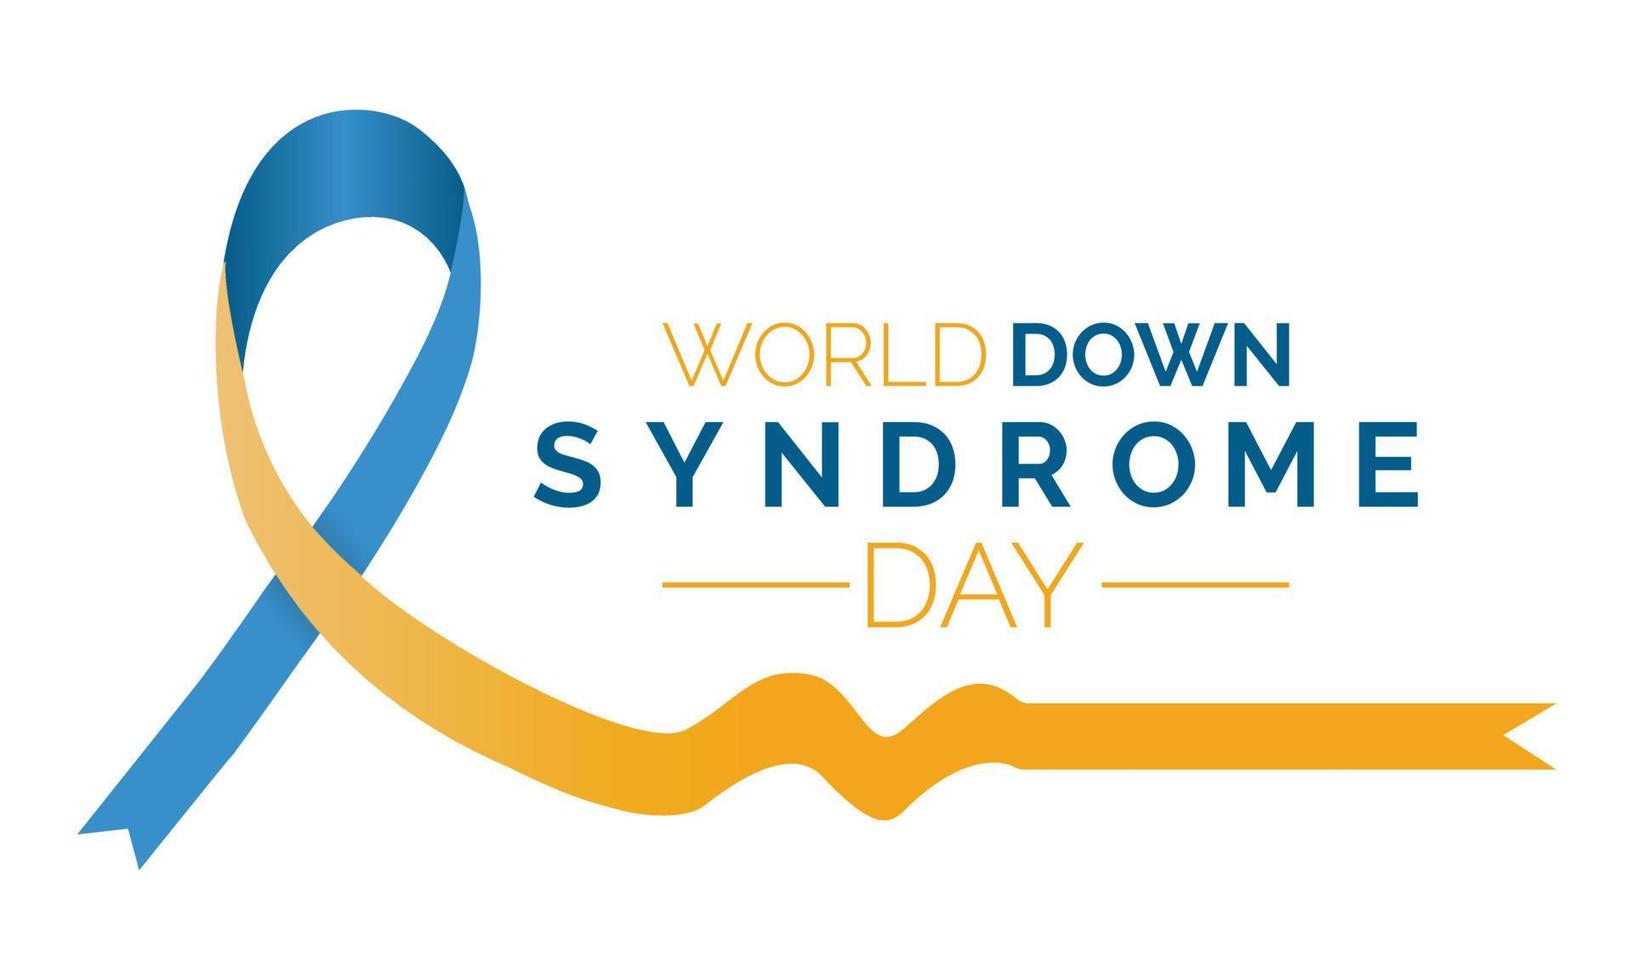 il internazionale giorno di uomo con giù sindrome. il giallo-blu nastro è un' simbolo vettore illustrazione modello.